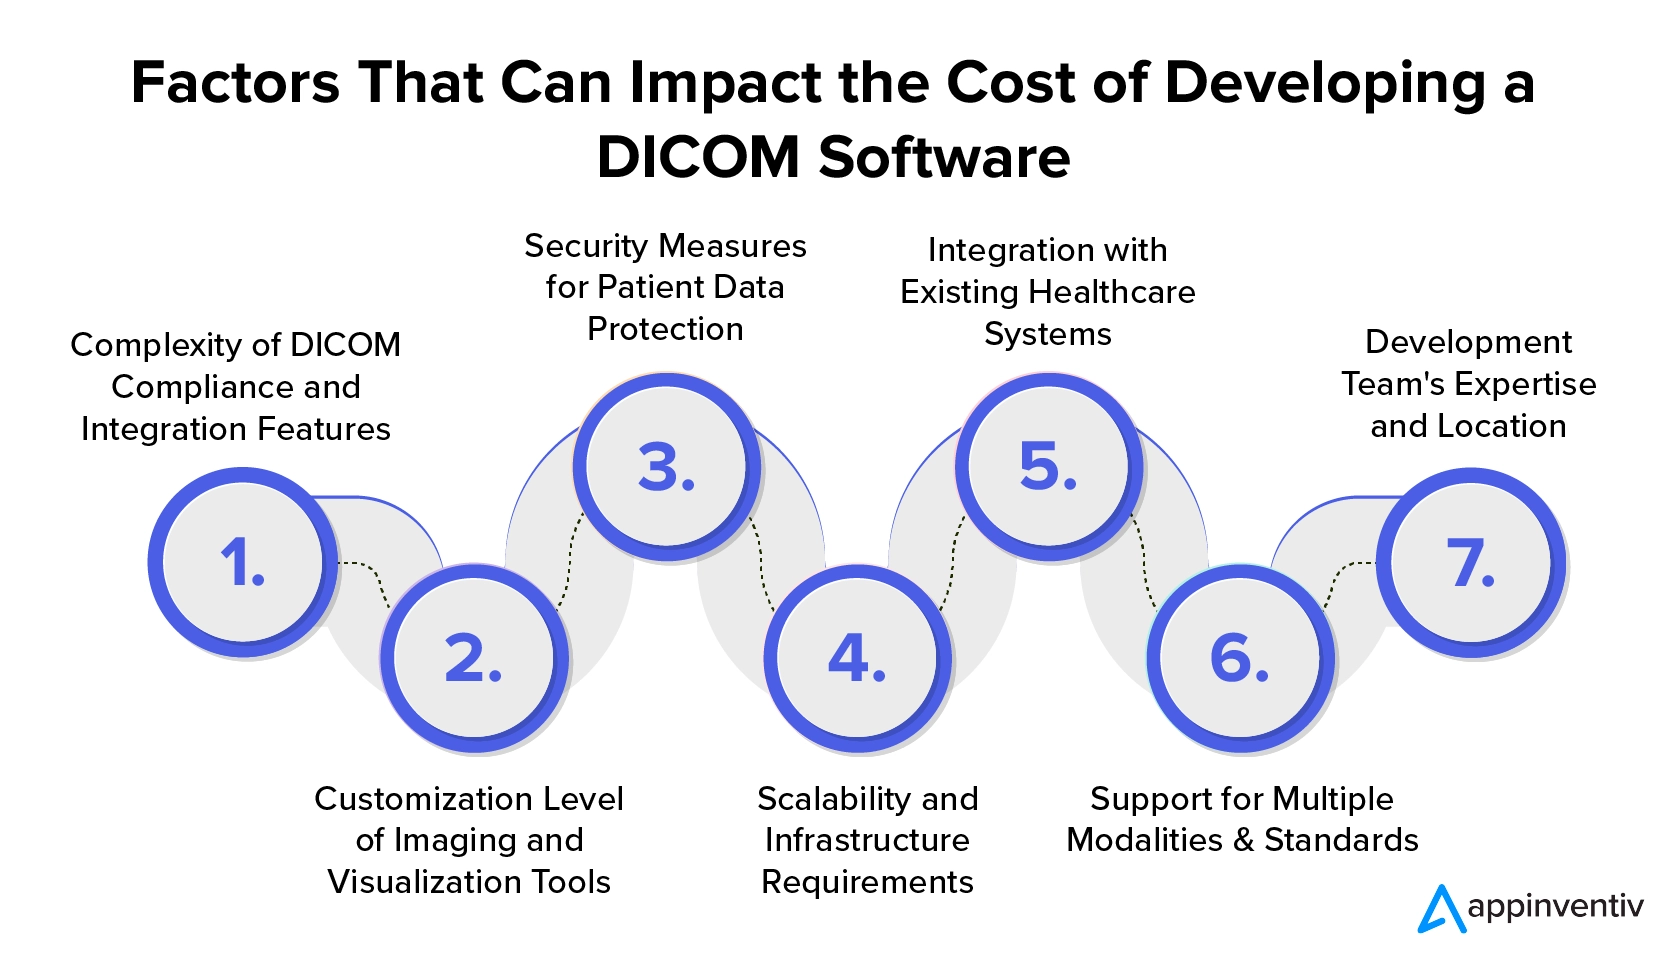 可能影响 DICOM 软件开发成本的因素